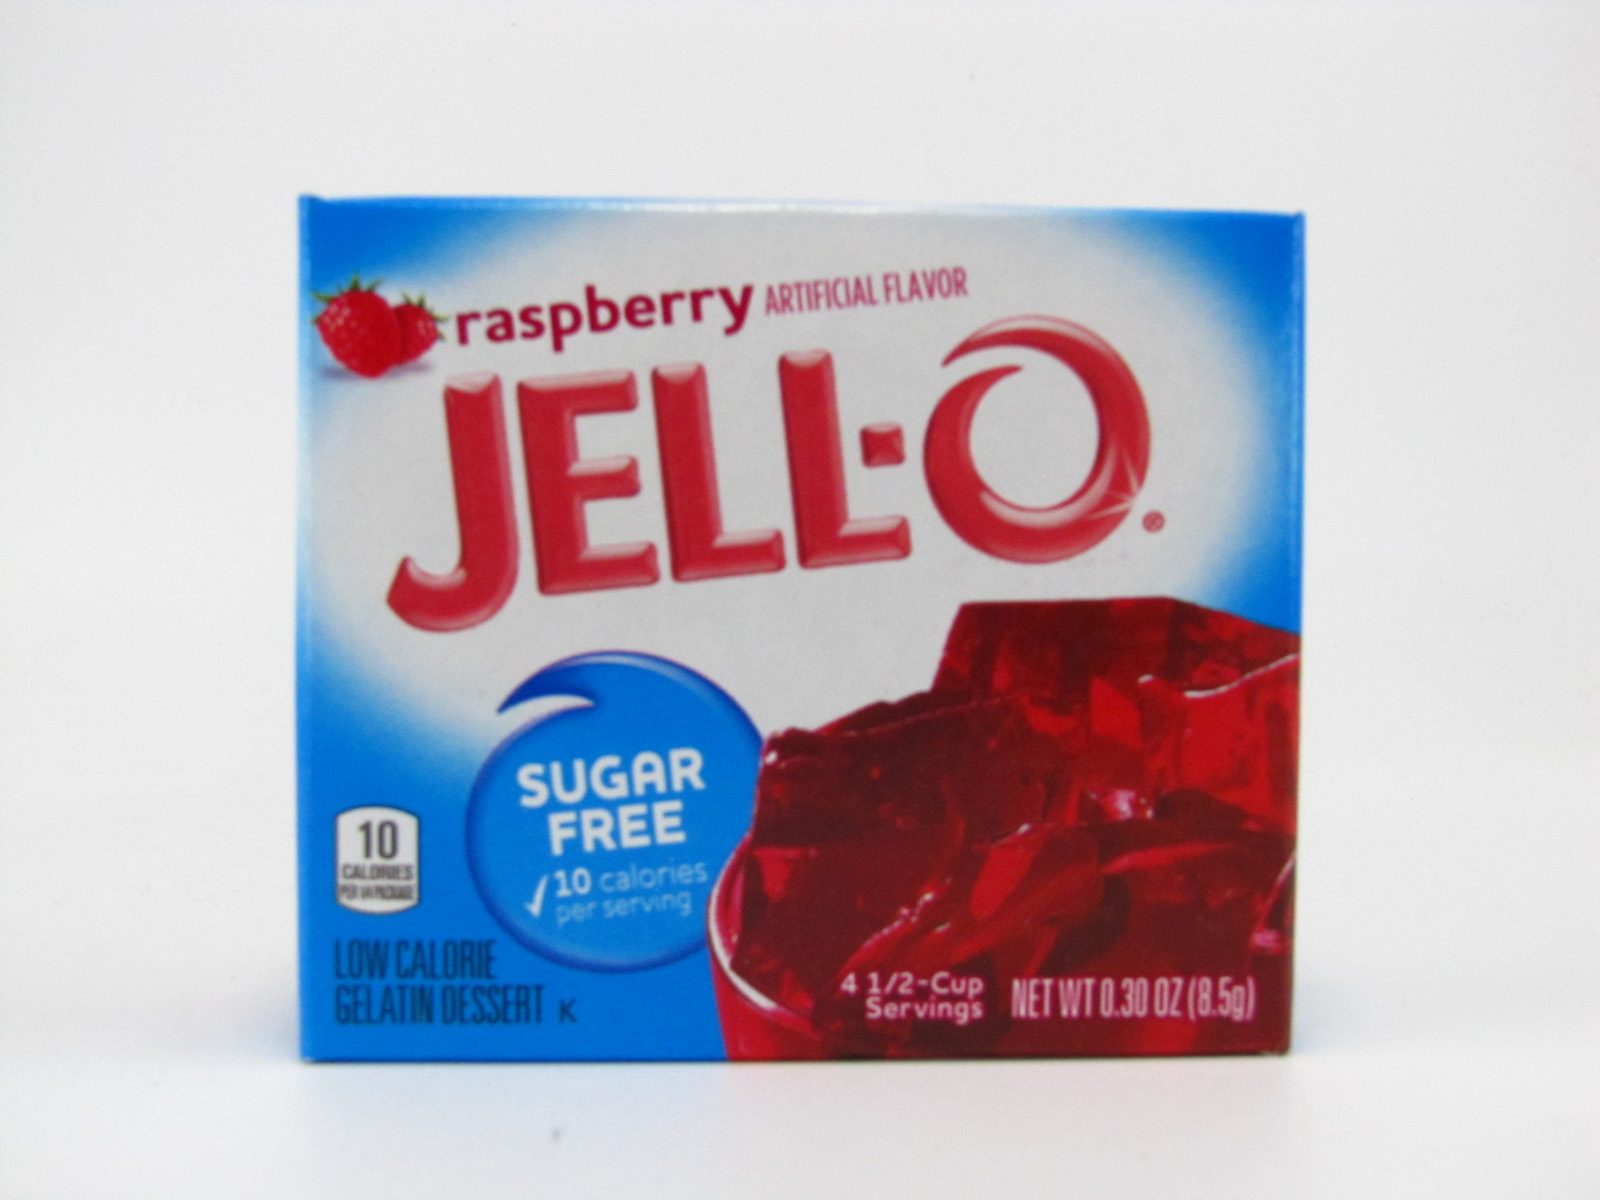 Jello - Raspberry - front view